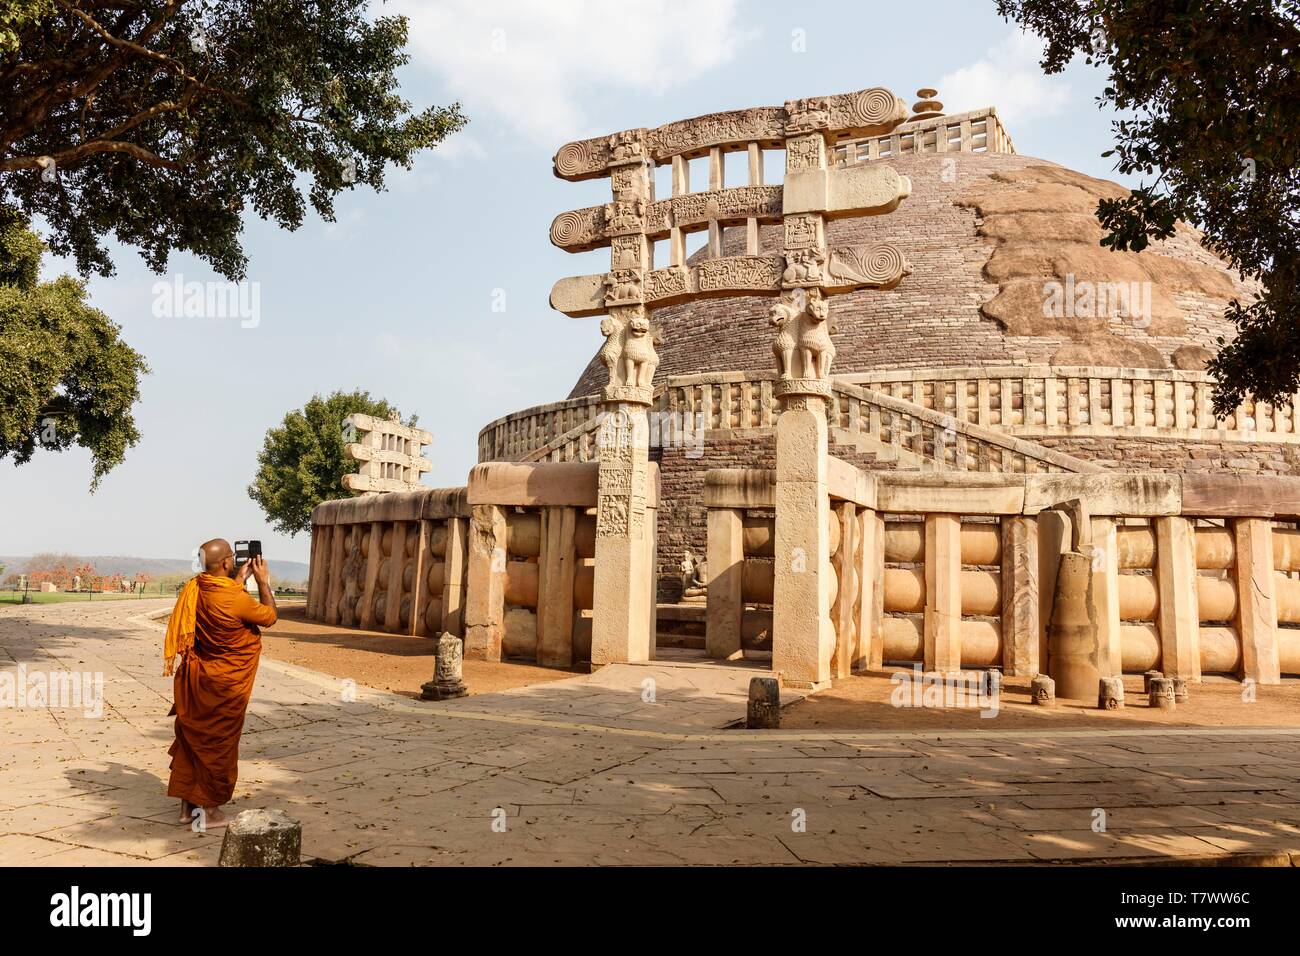 Indien, Madhya Pradesh, Sanchi, bouddhist Denkmälern zum Weltkulturerbe der UNESCO, buddhistischer Mönch, ein Bild von der großen Stupa Stockfoto